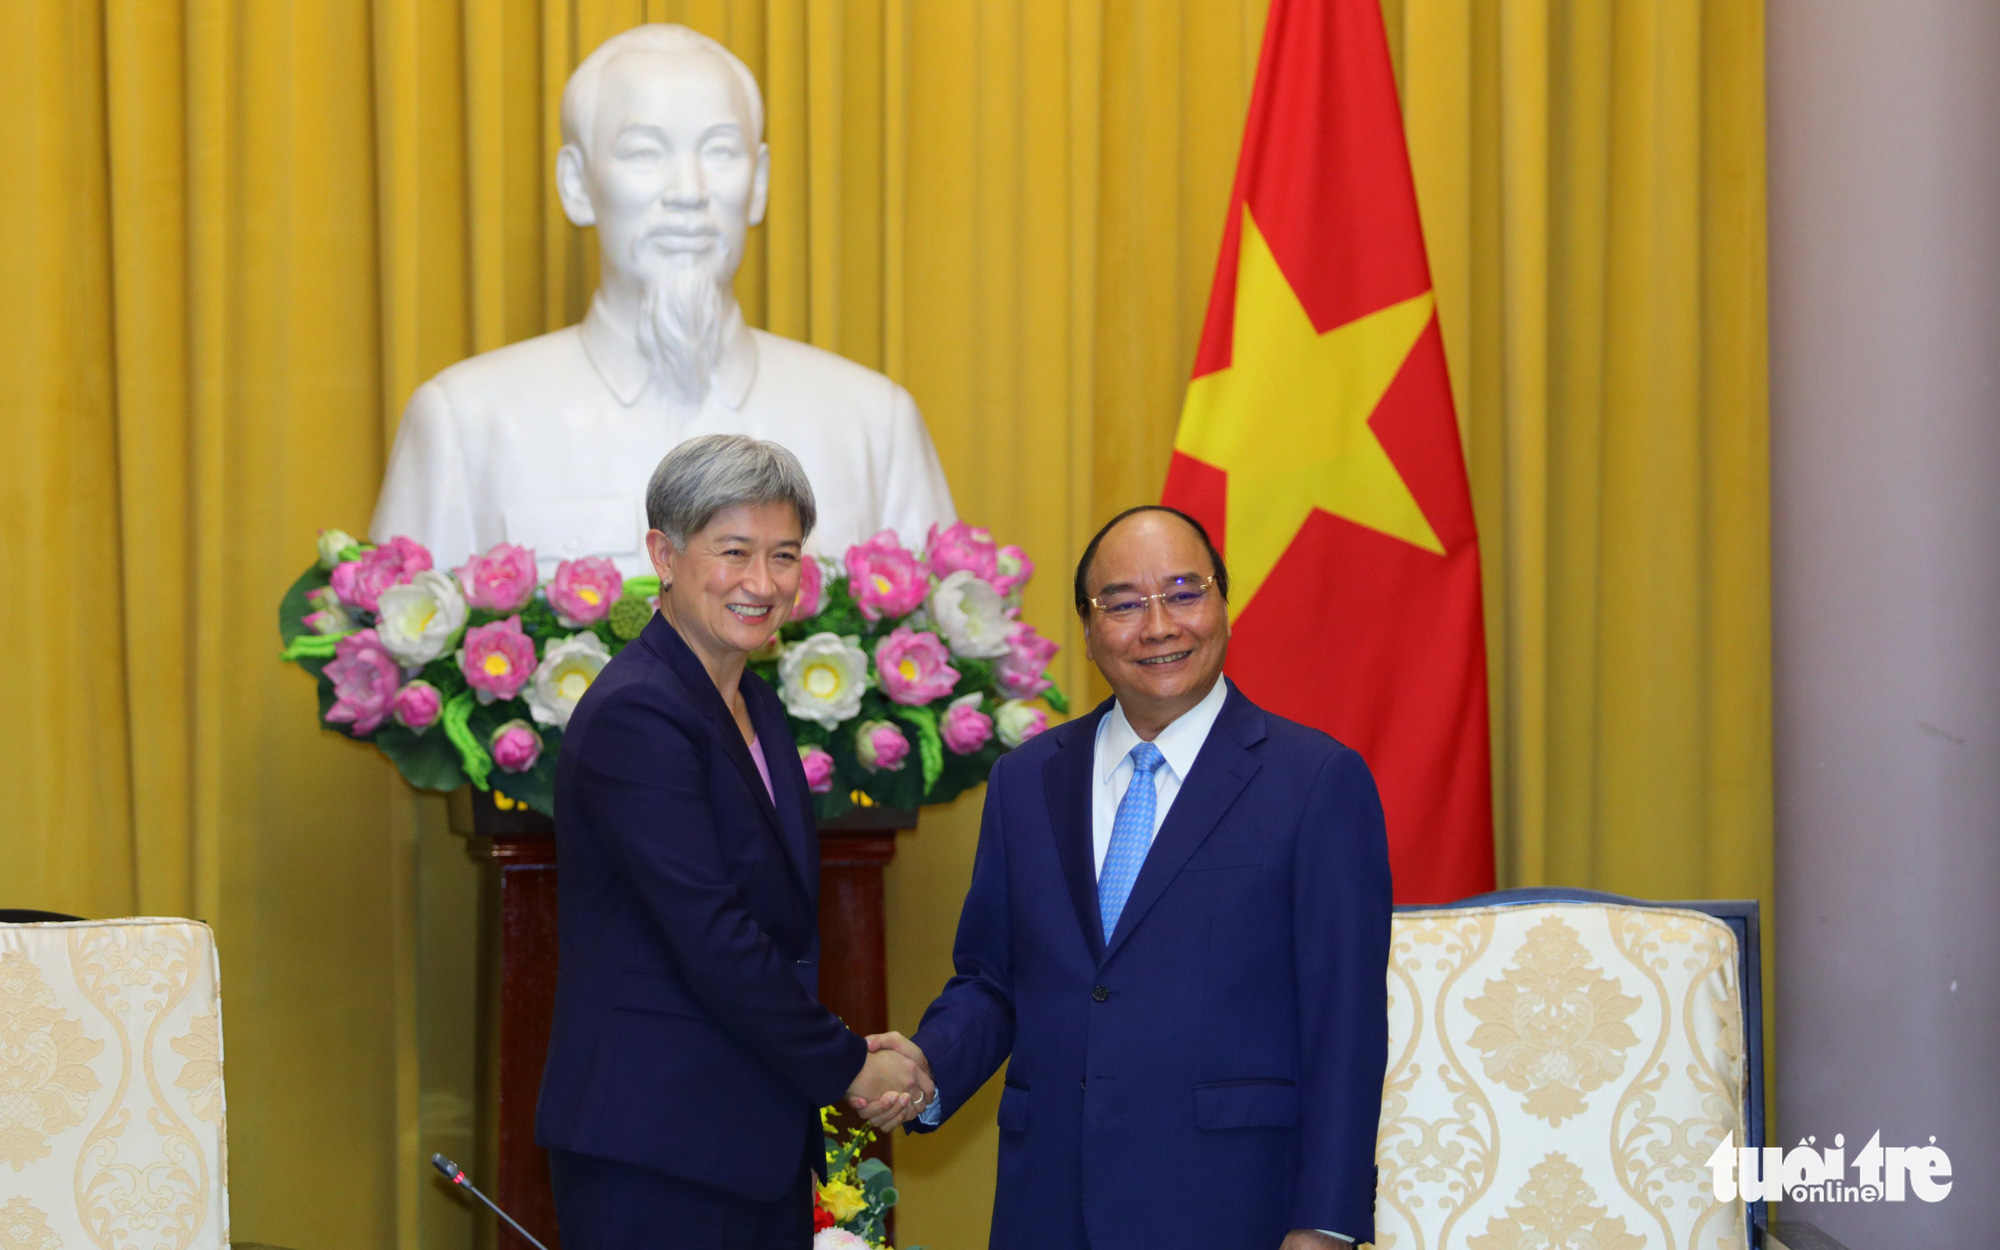 Ngoại trưởng Úc: "Thật tuyệt vời khi ở Việt Nam"